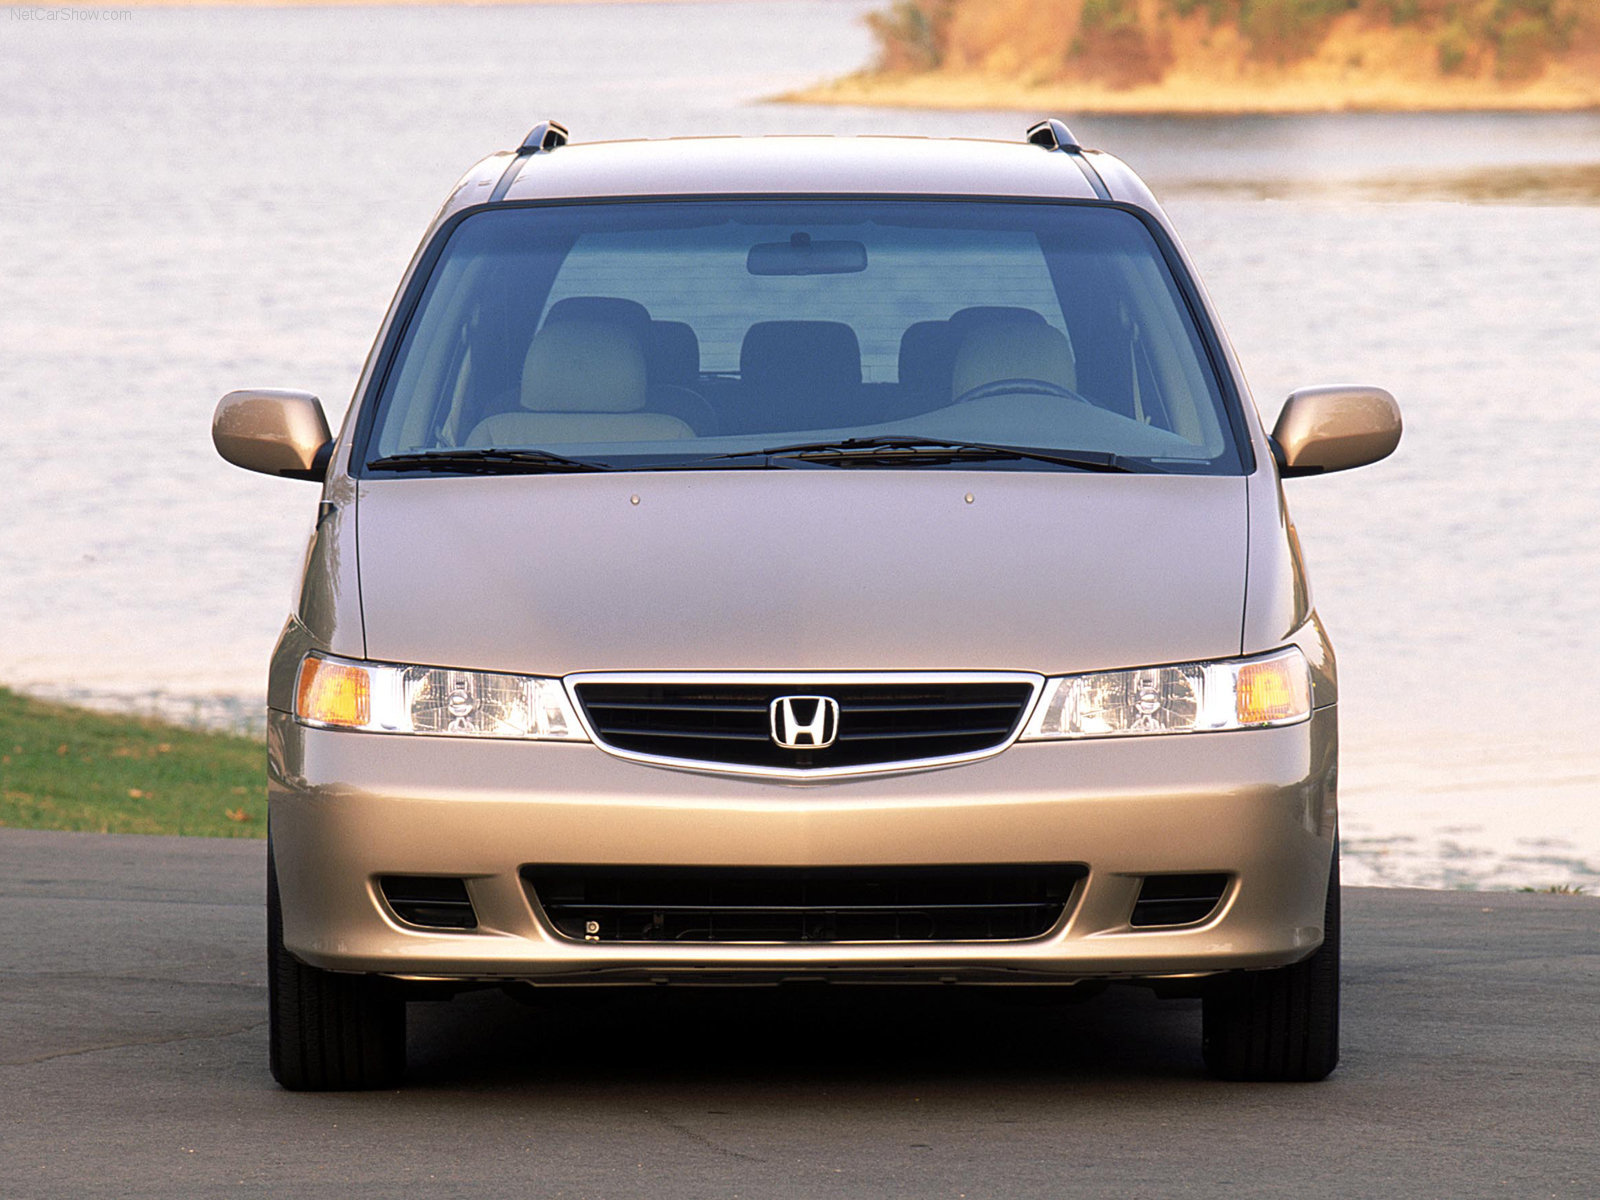 Honda Odyssey 2002 Honda-Odyssey-2002-1600-04